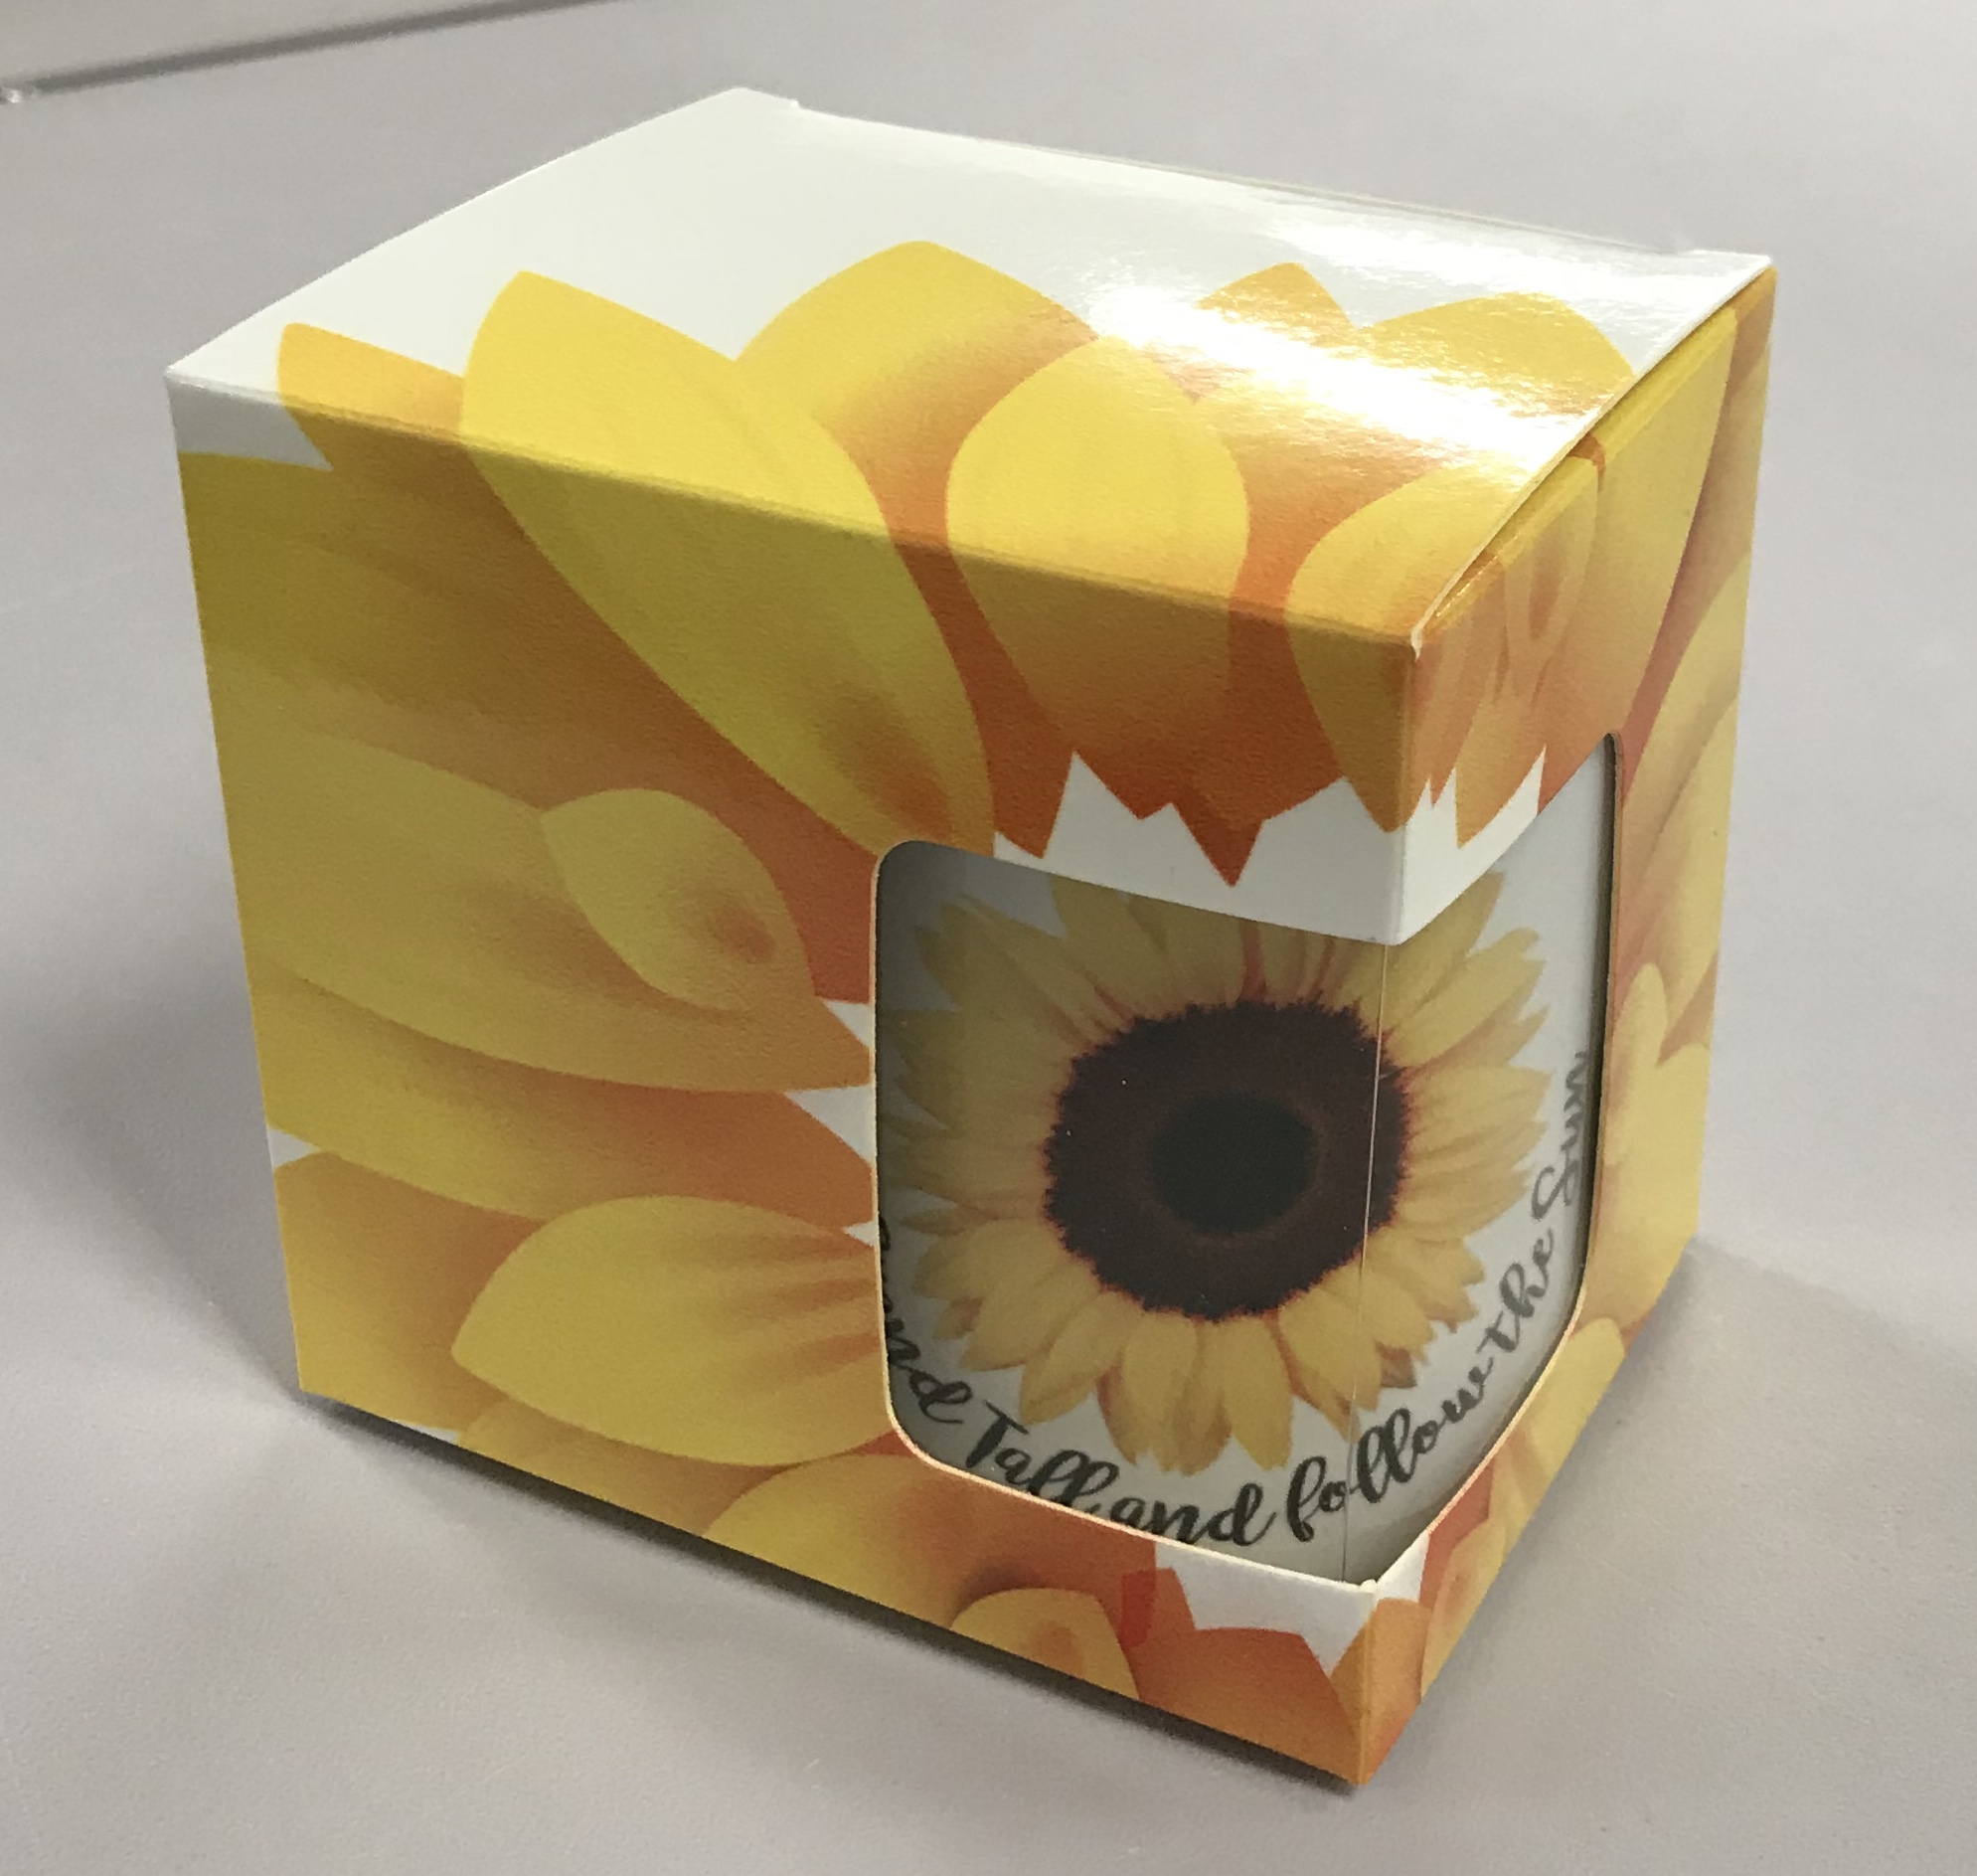 Mug and mug box made with sublimation printing